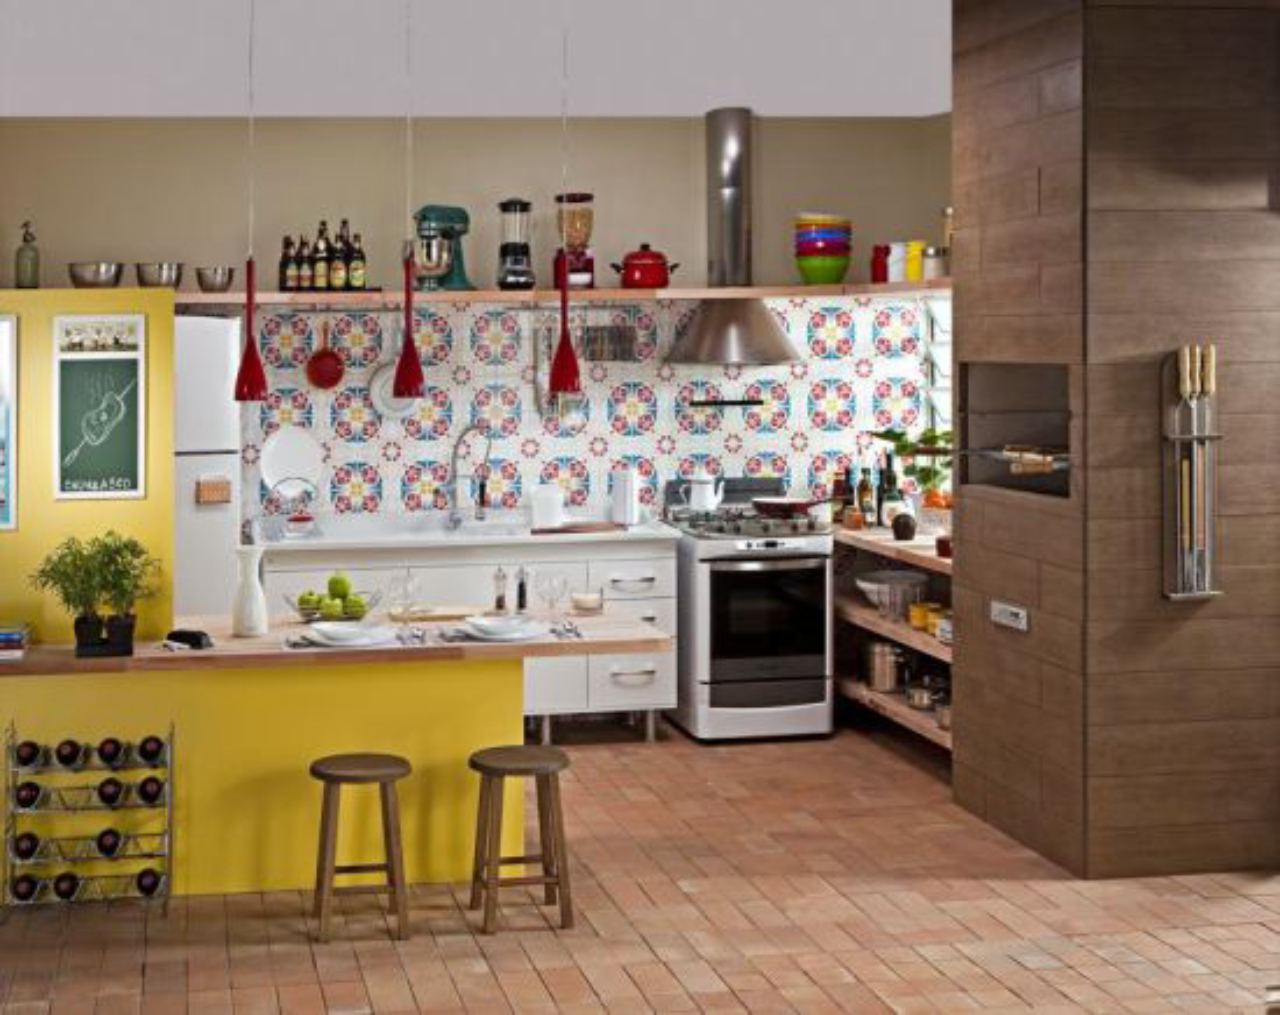 Apartamento em Porto Alegre integra cozinha e churrasqueira com móveis soltos e muitas prateleiras. Foto: Marcelo Biscola/Divulgação